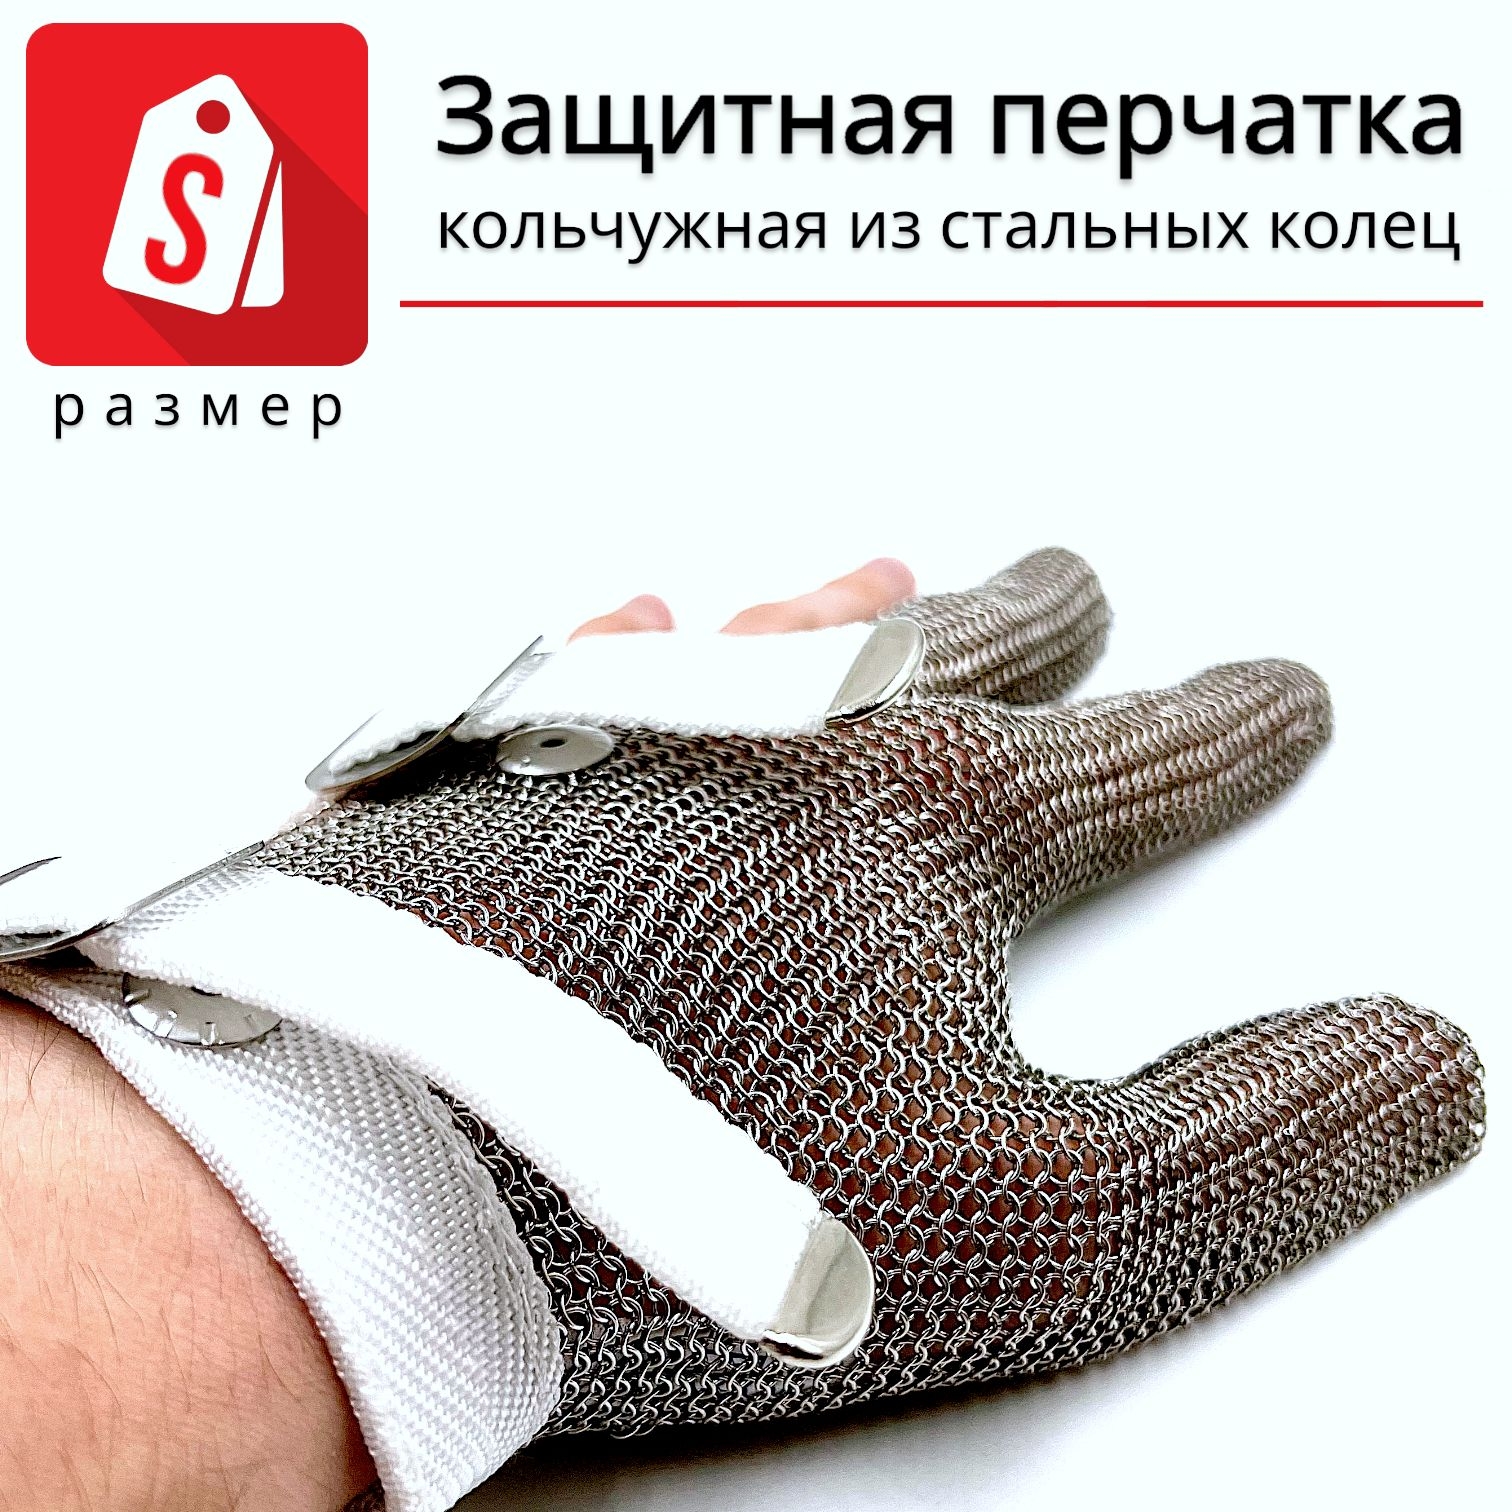 Трехпалая кольчужная перчатка (размер S) перчатка щетка для шерсти на правую руку с удлиненными зубчиками зеленая